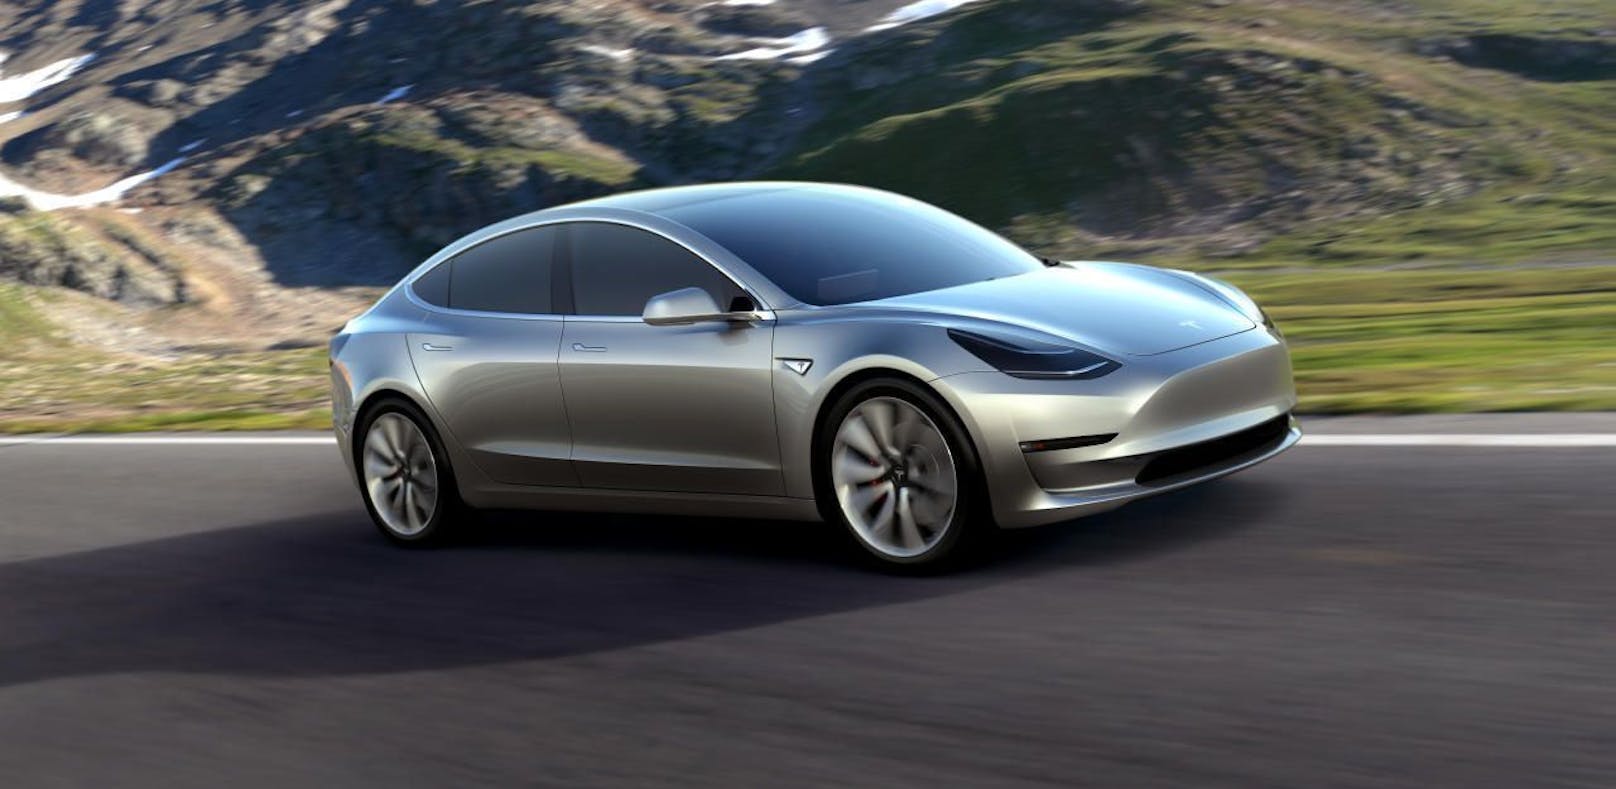 Die Herstellung des Tesla Model 3 soll Mitte 2017 beginnen.